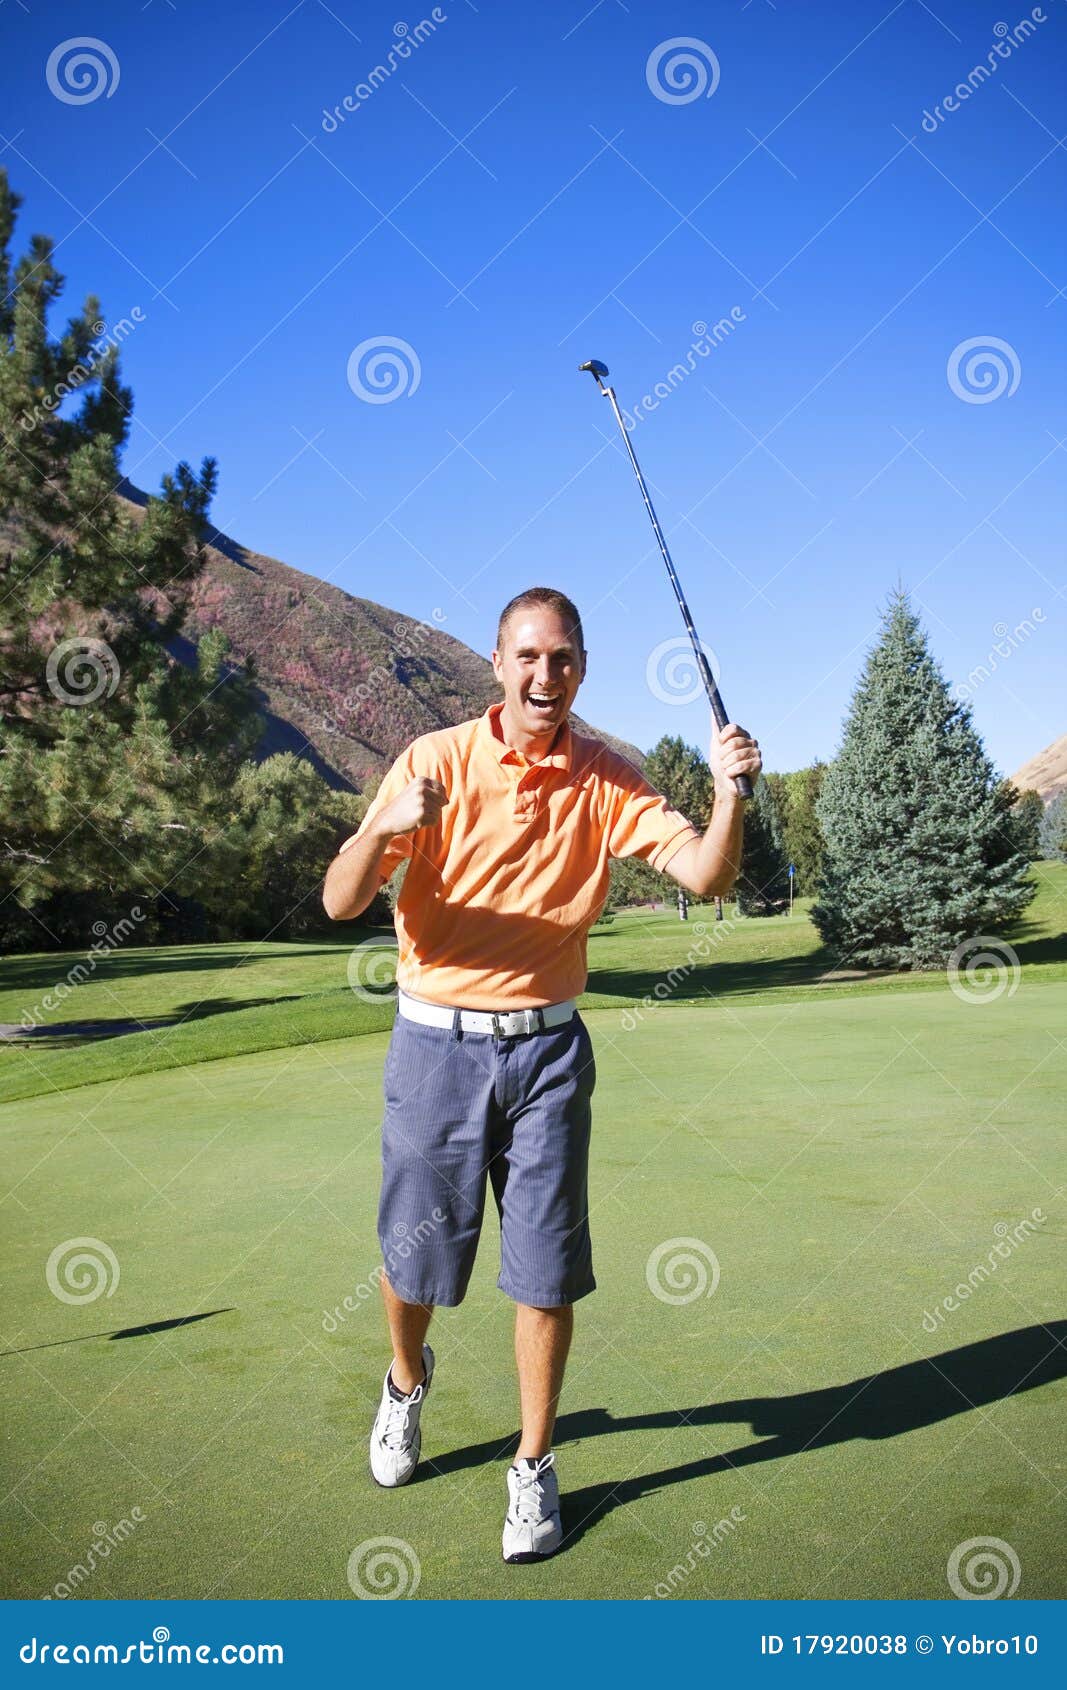 successful golfer making putt